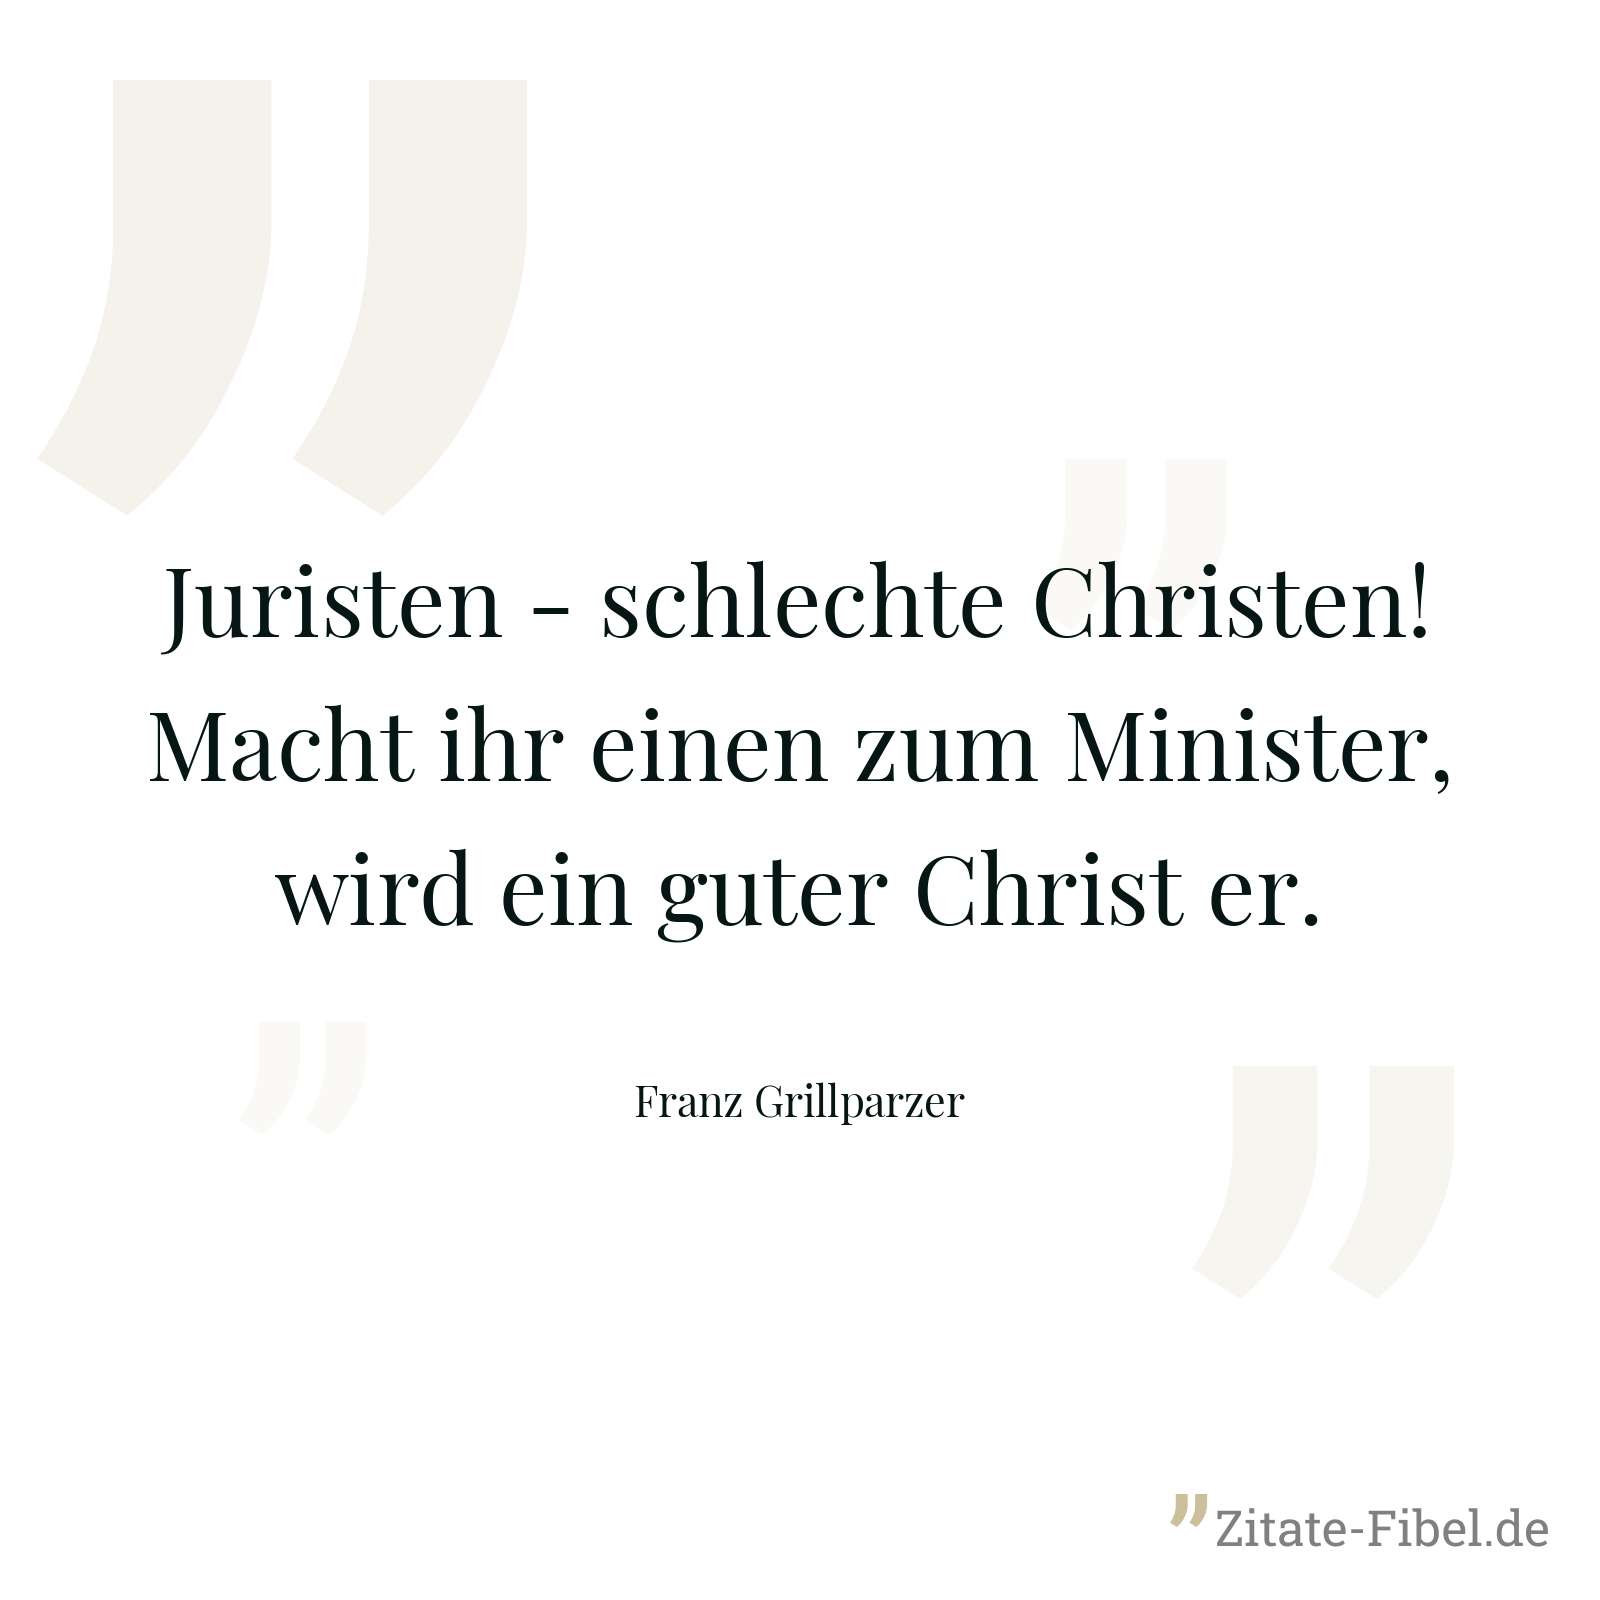 Juristen - schlechte Christen! Macht ihr einen zum Minister, wird ein guter Christ er. - Franz Grillparzer